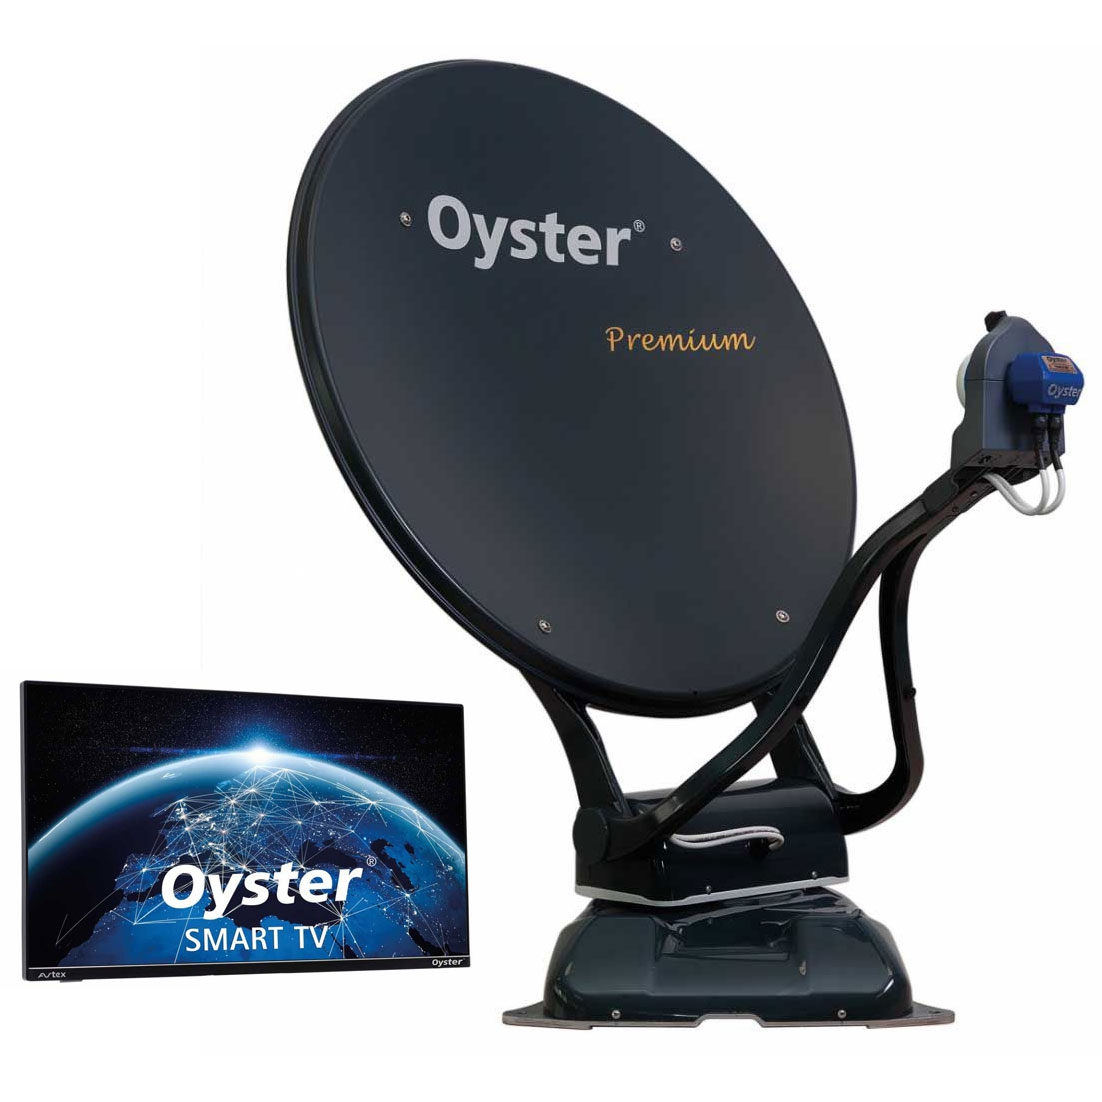 TEN HAAFT Oyster 70 Premium Sat-Anlage mit Smart TV 19 Zoll - 87535 - 88379